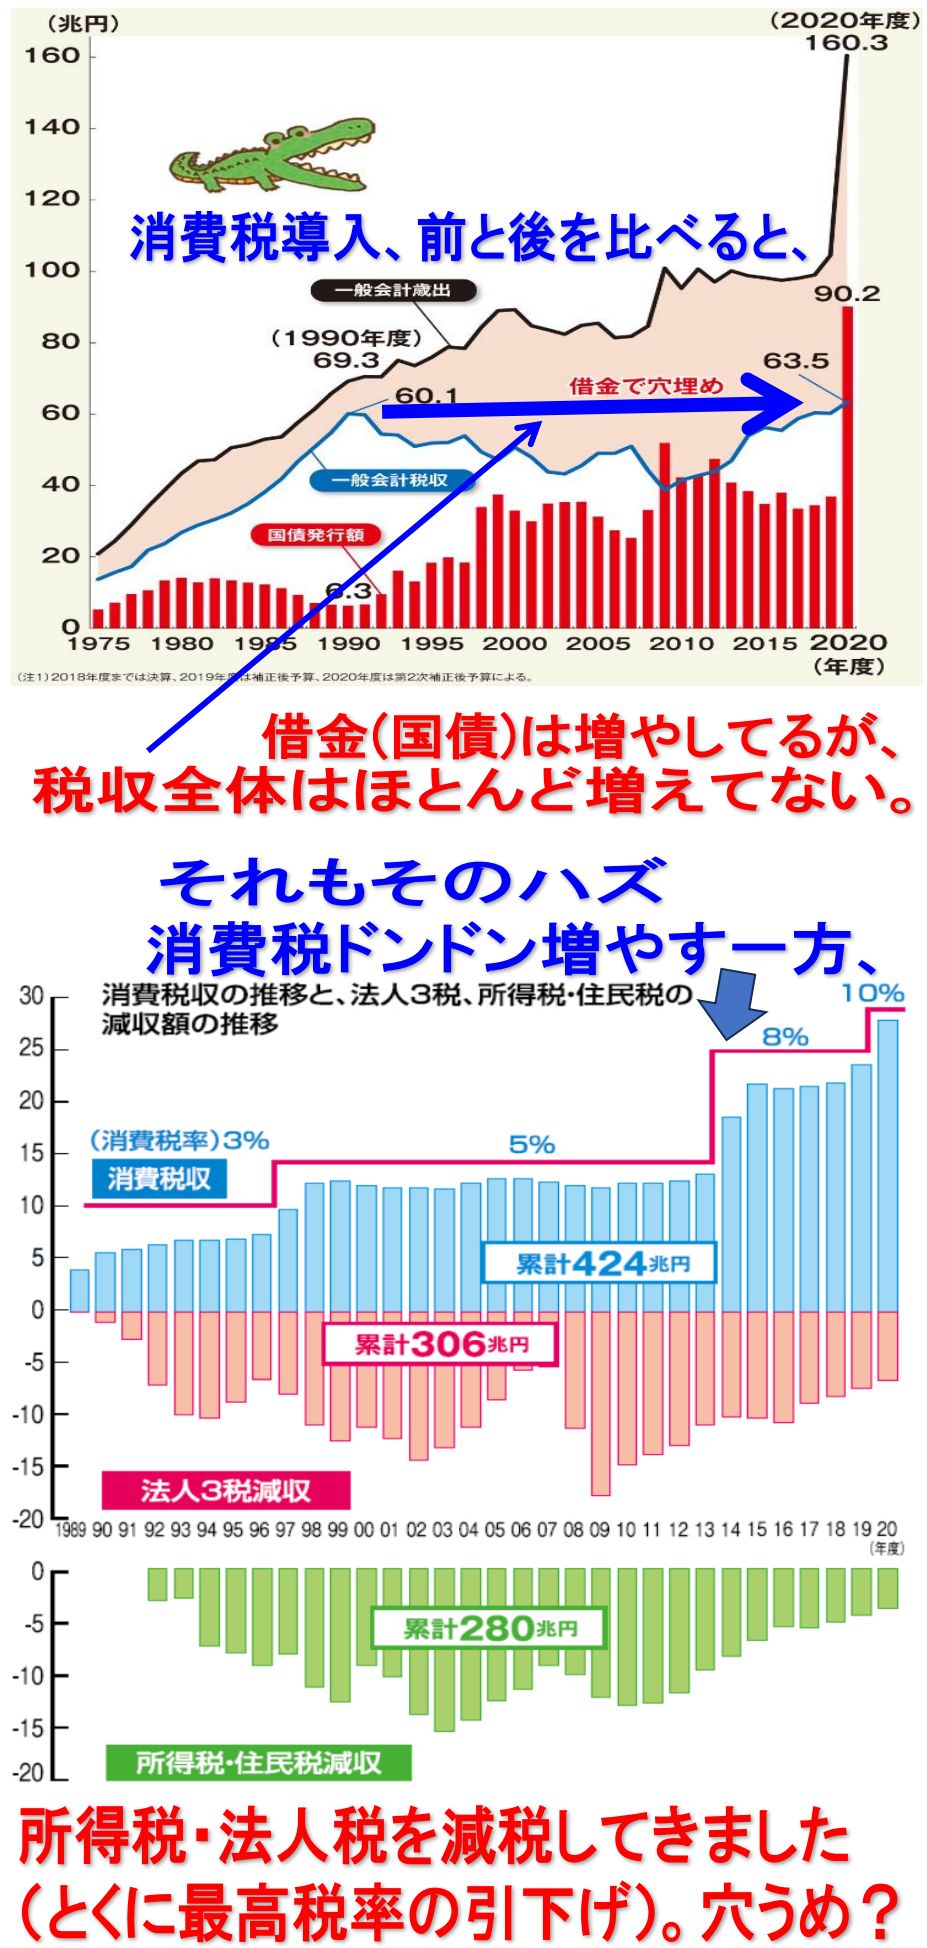 日本の税収